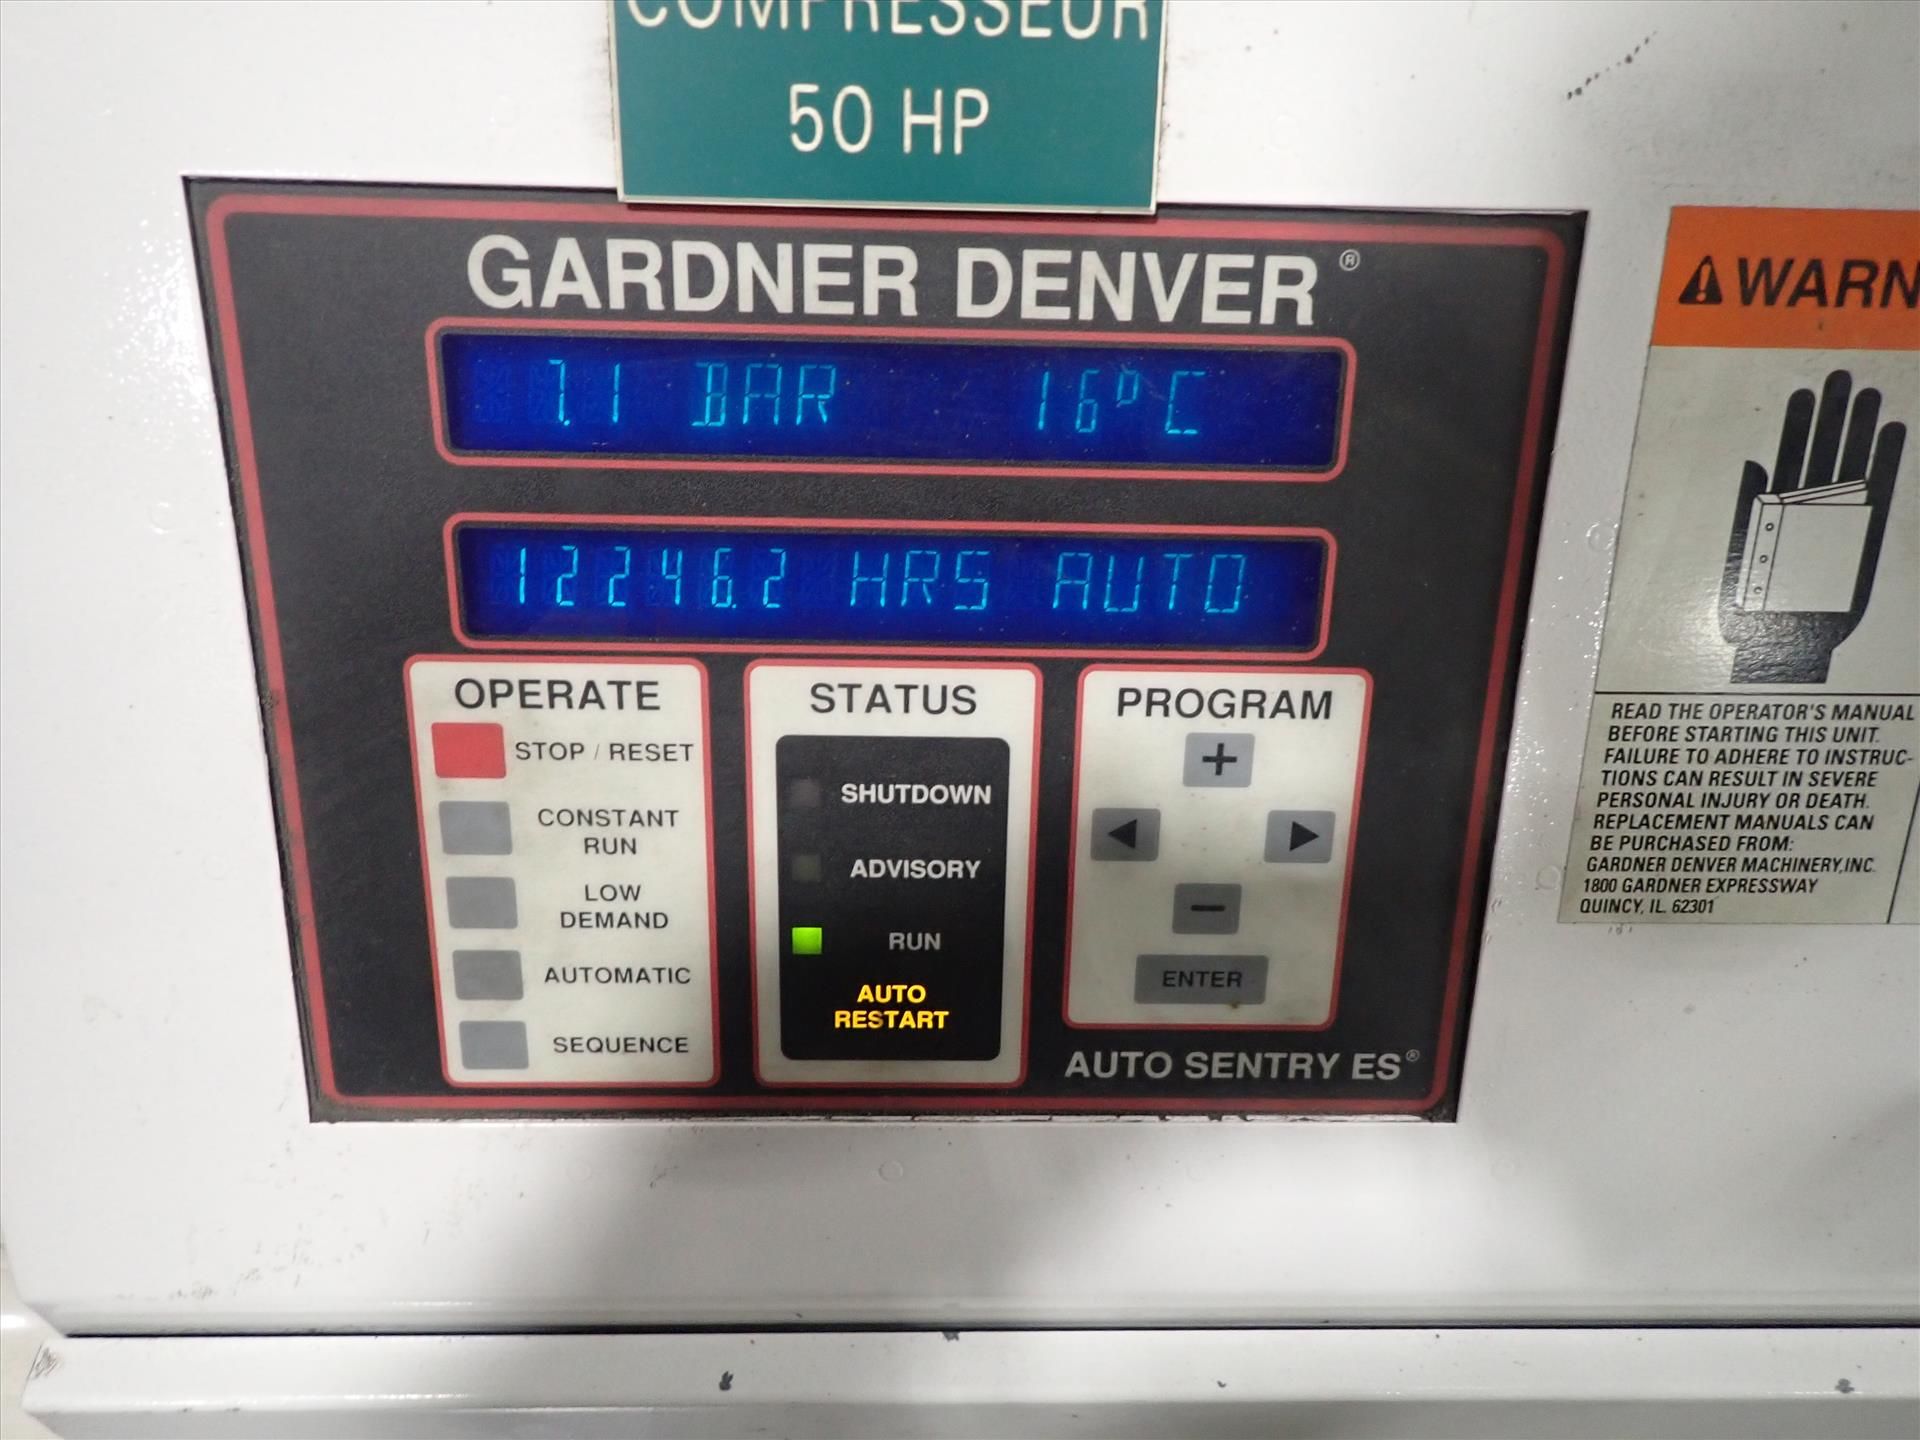 GardnerDenver air compressor, mod. EBH0JC, ser. no. U67246 w/ AutoSentury ES controls - Image 4 of 4